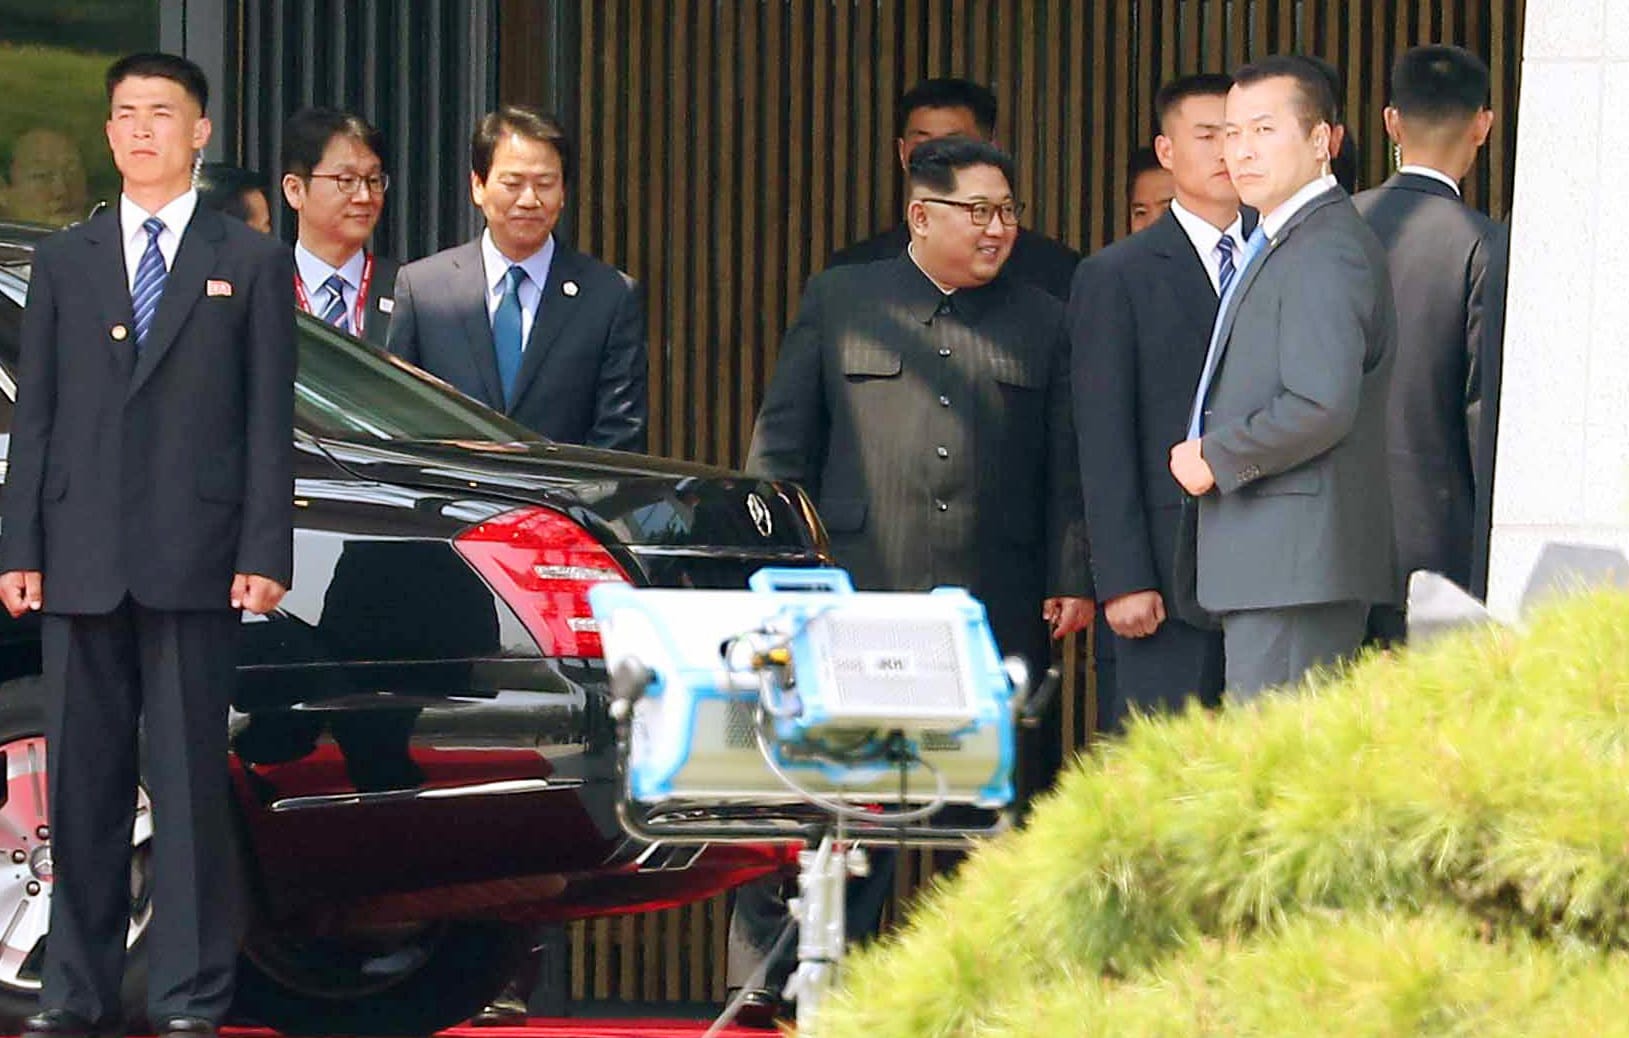 Nach den Gesprächen kehrt Kim Jong Un zu seinem Auto zurück. Zum Mittagessen fuhr er zurück nach Nordkorea. Nach dem Essen will er noch einmal auf die südkoreanische Seite zurückkehren.